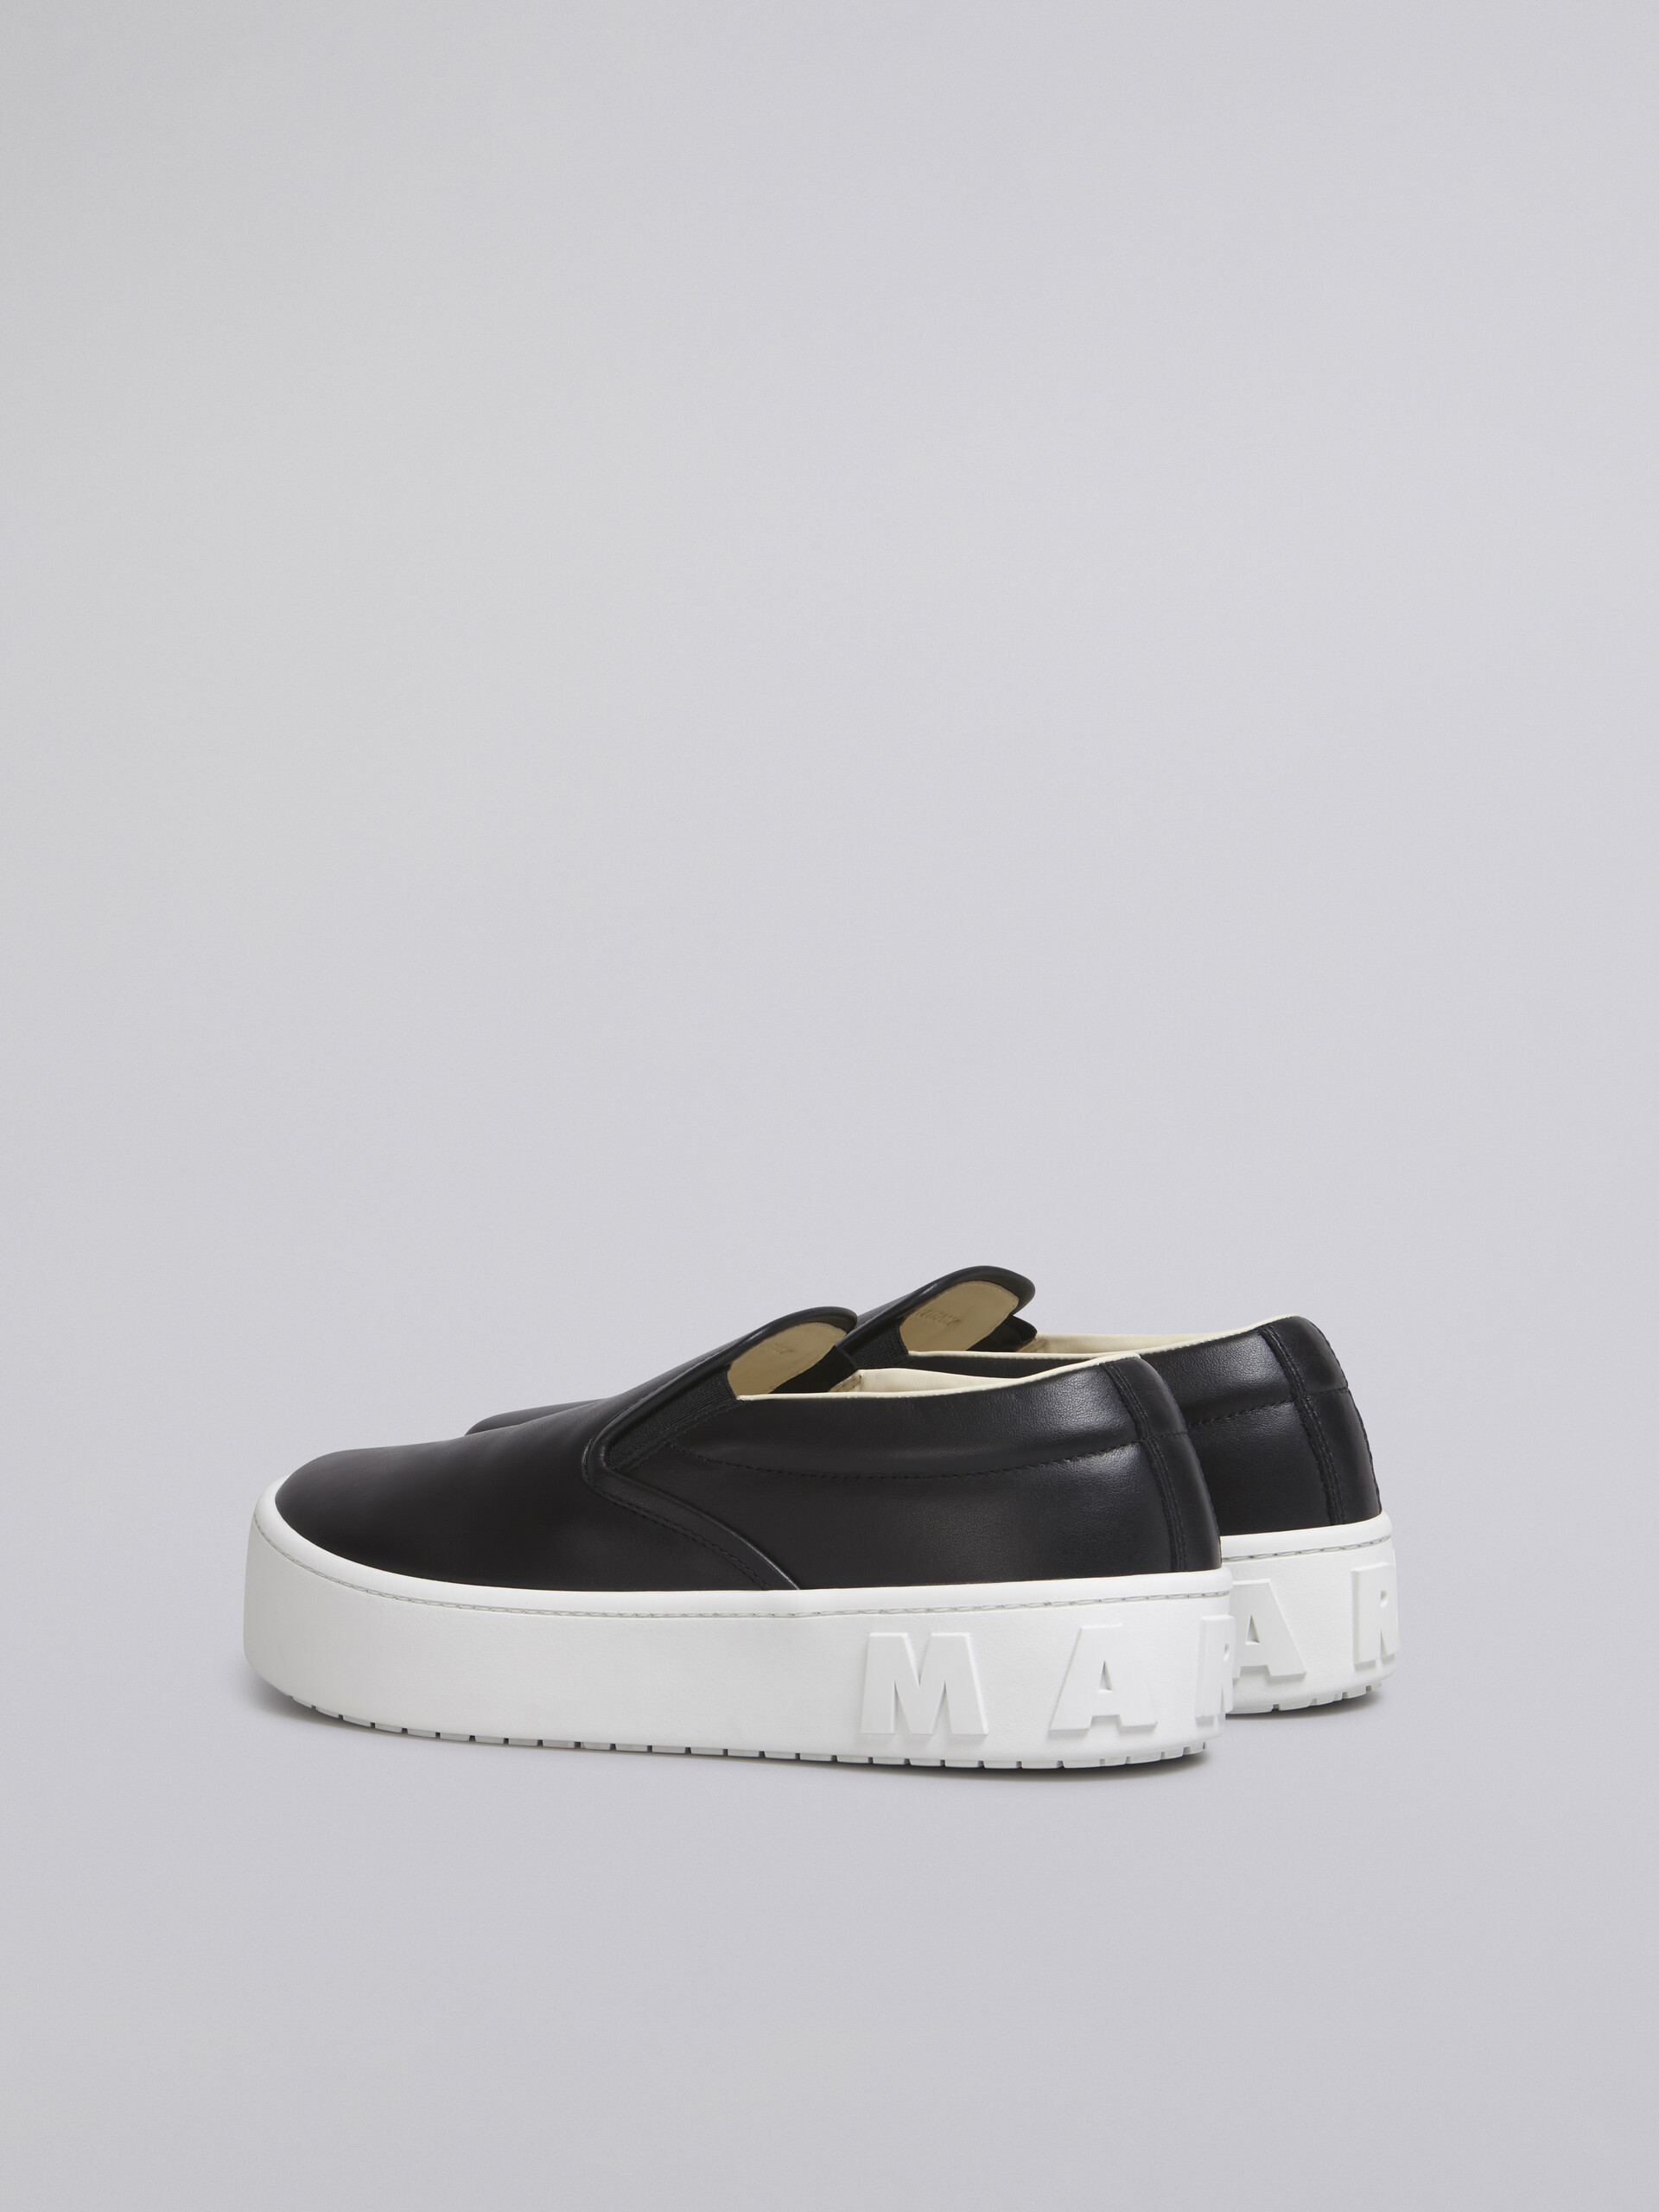 Sneaker slip-on in vitello nero con maxi logo Marni in rilievo - Sneakers - Image 3